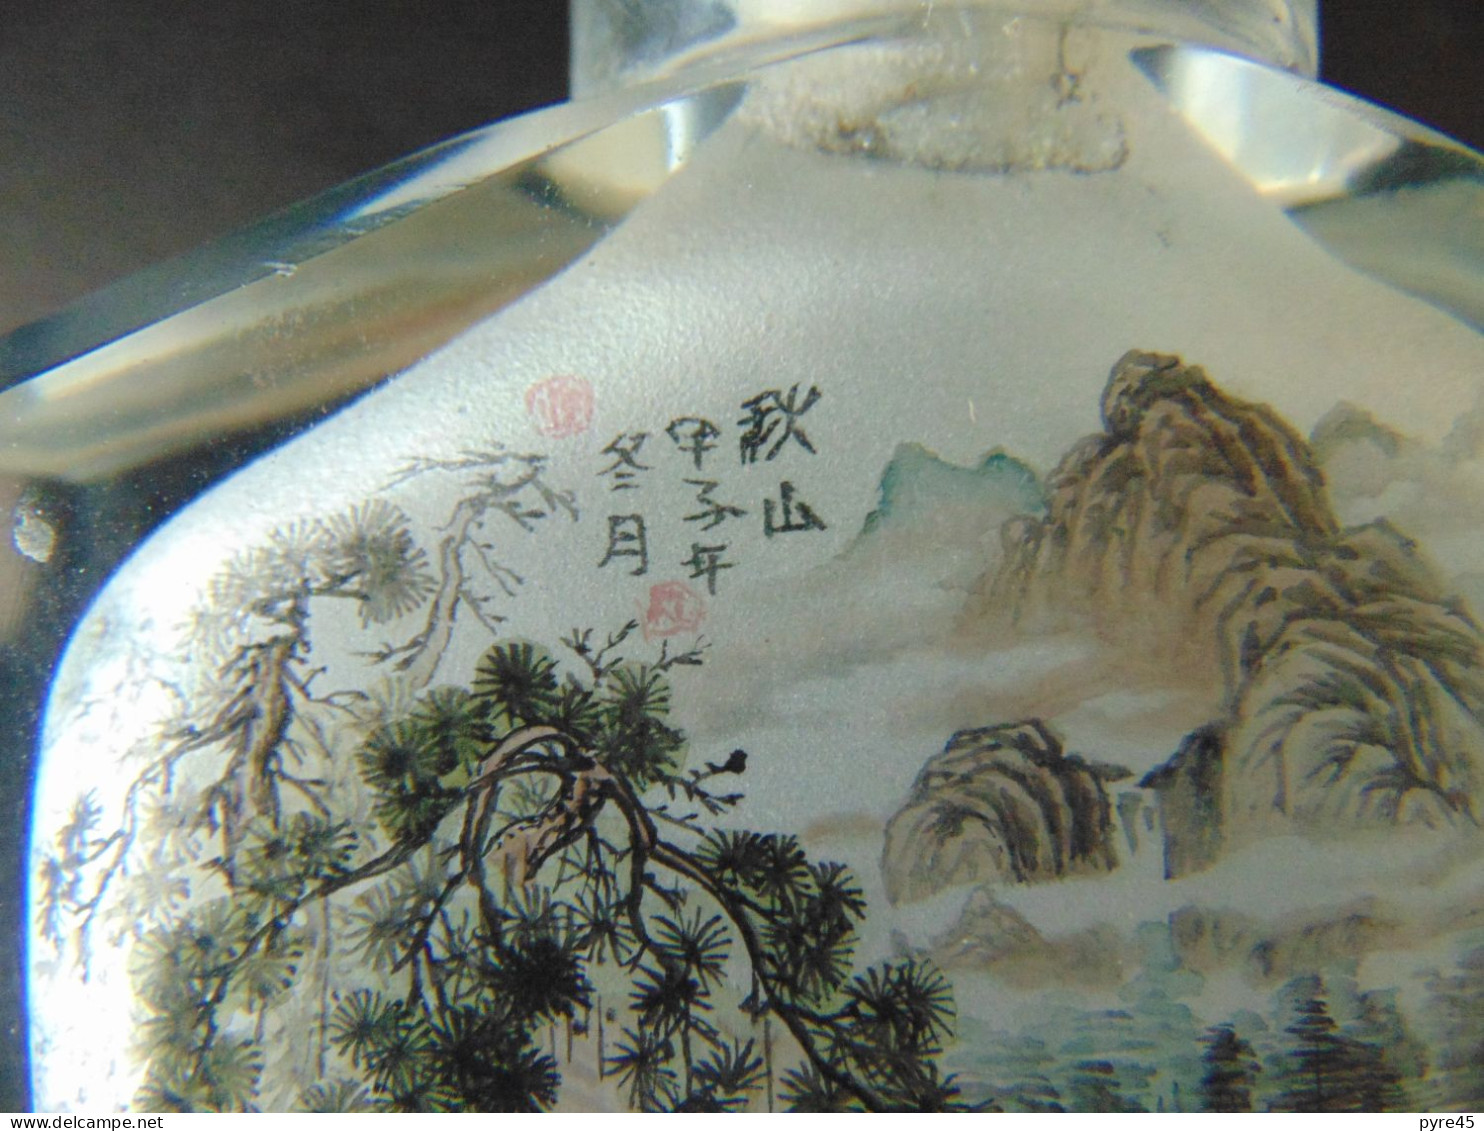 Flacon tabatière en verre, décor paysage asiatique peint à l'intérieur , dimensions 9 x 3 x 10cm, poids 550 gr